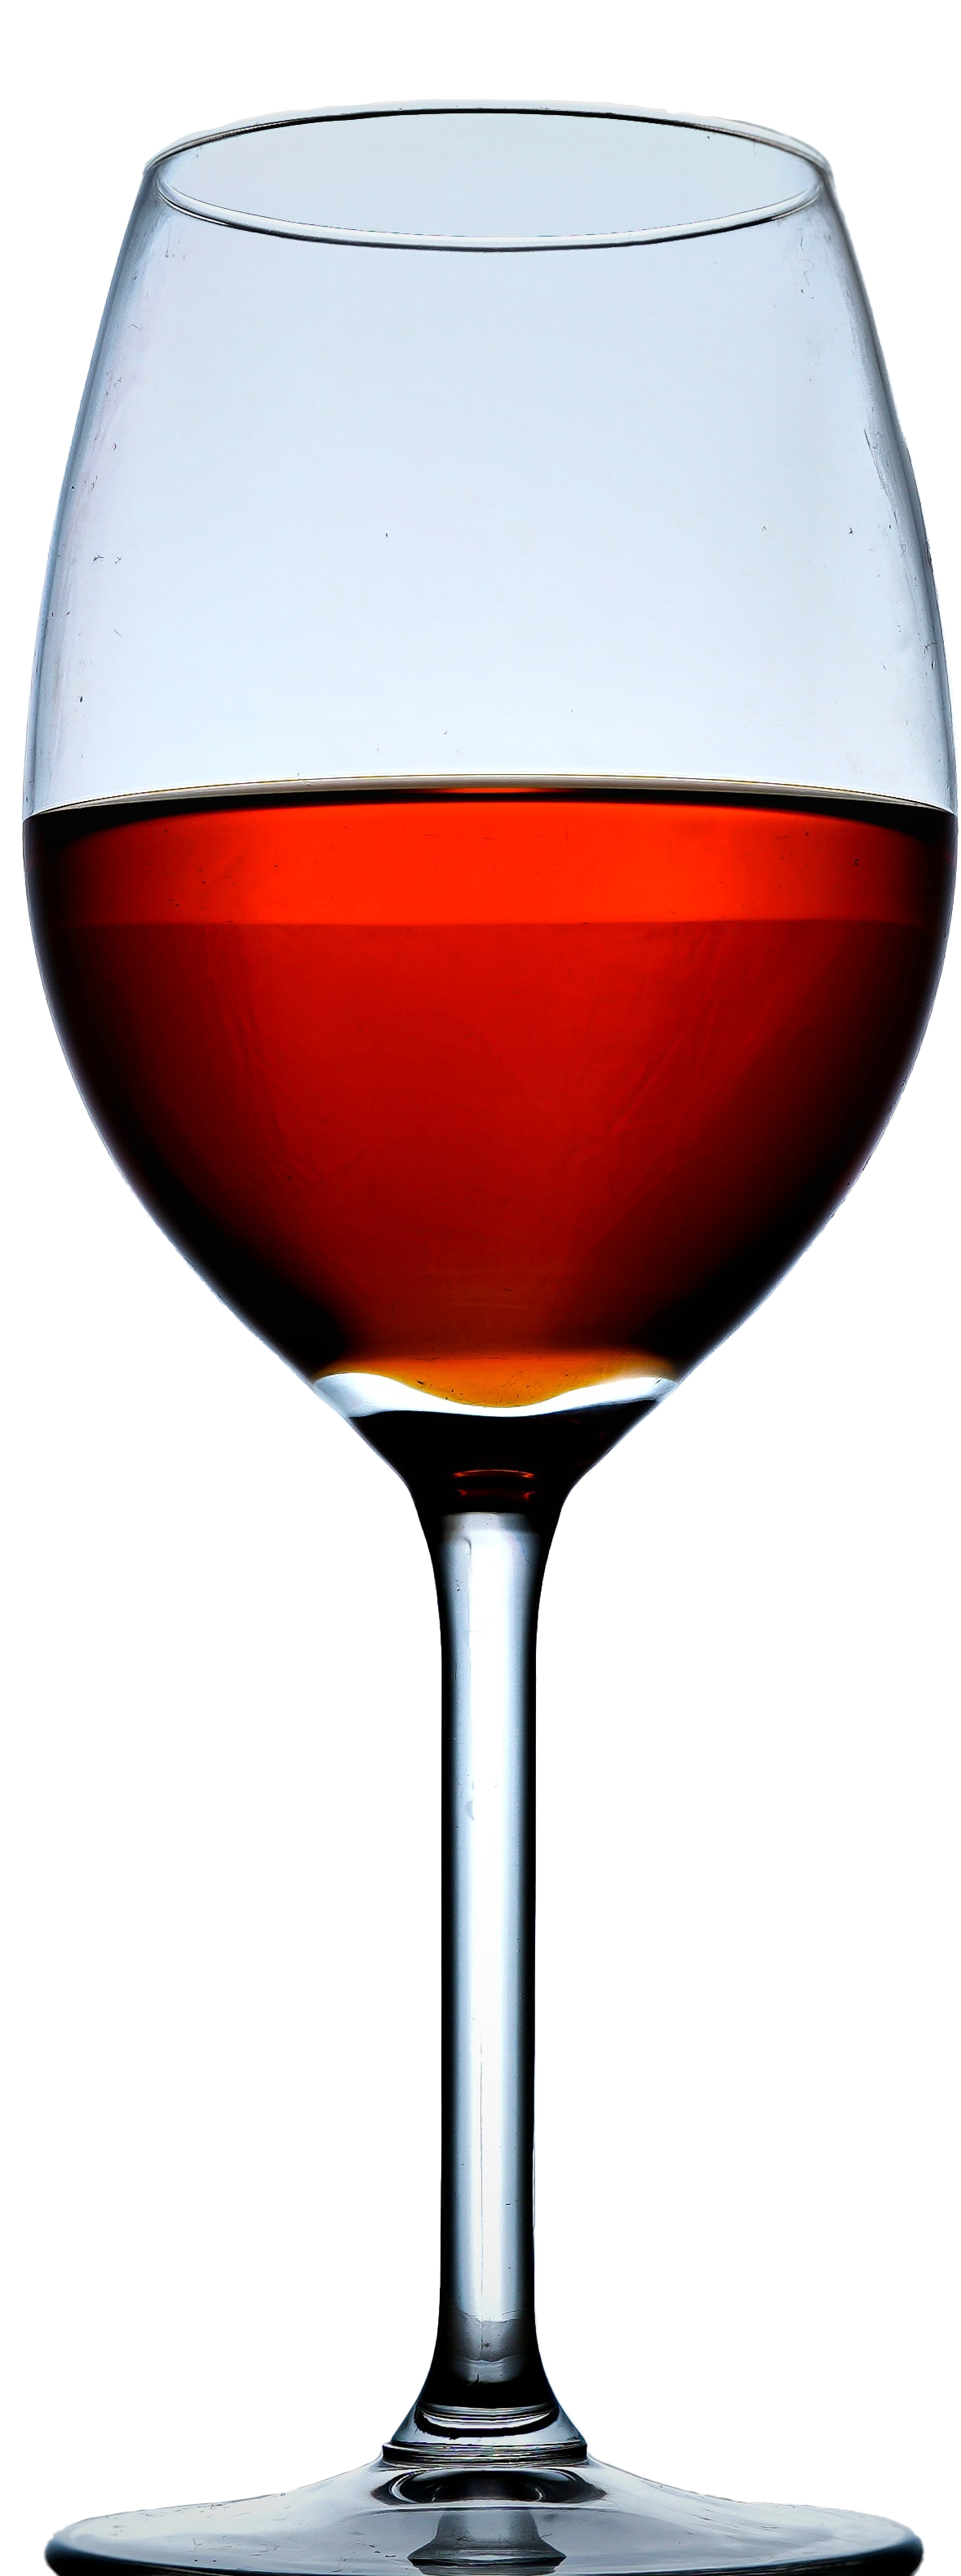 Glass of wine/Pahar vin